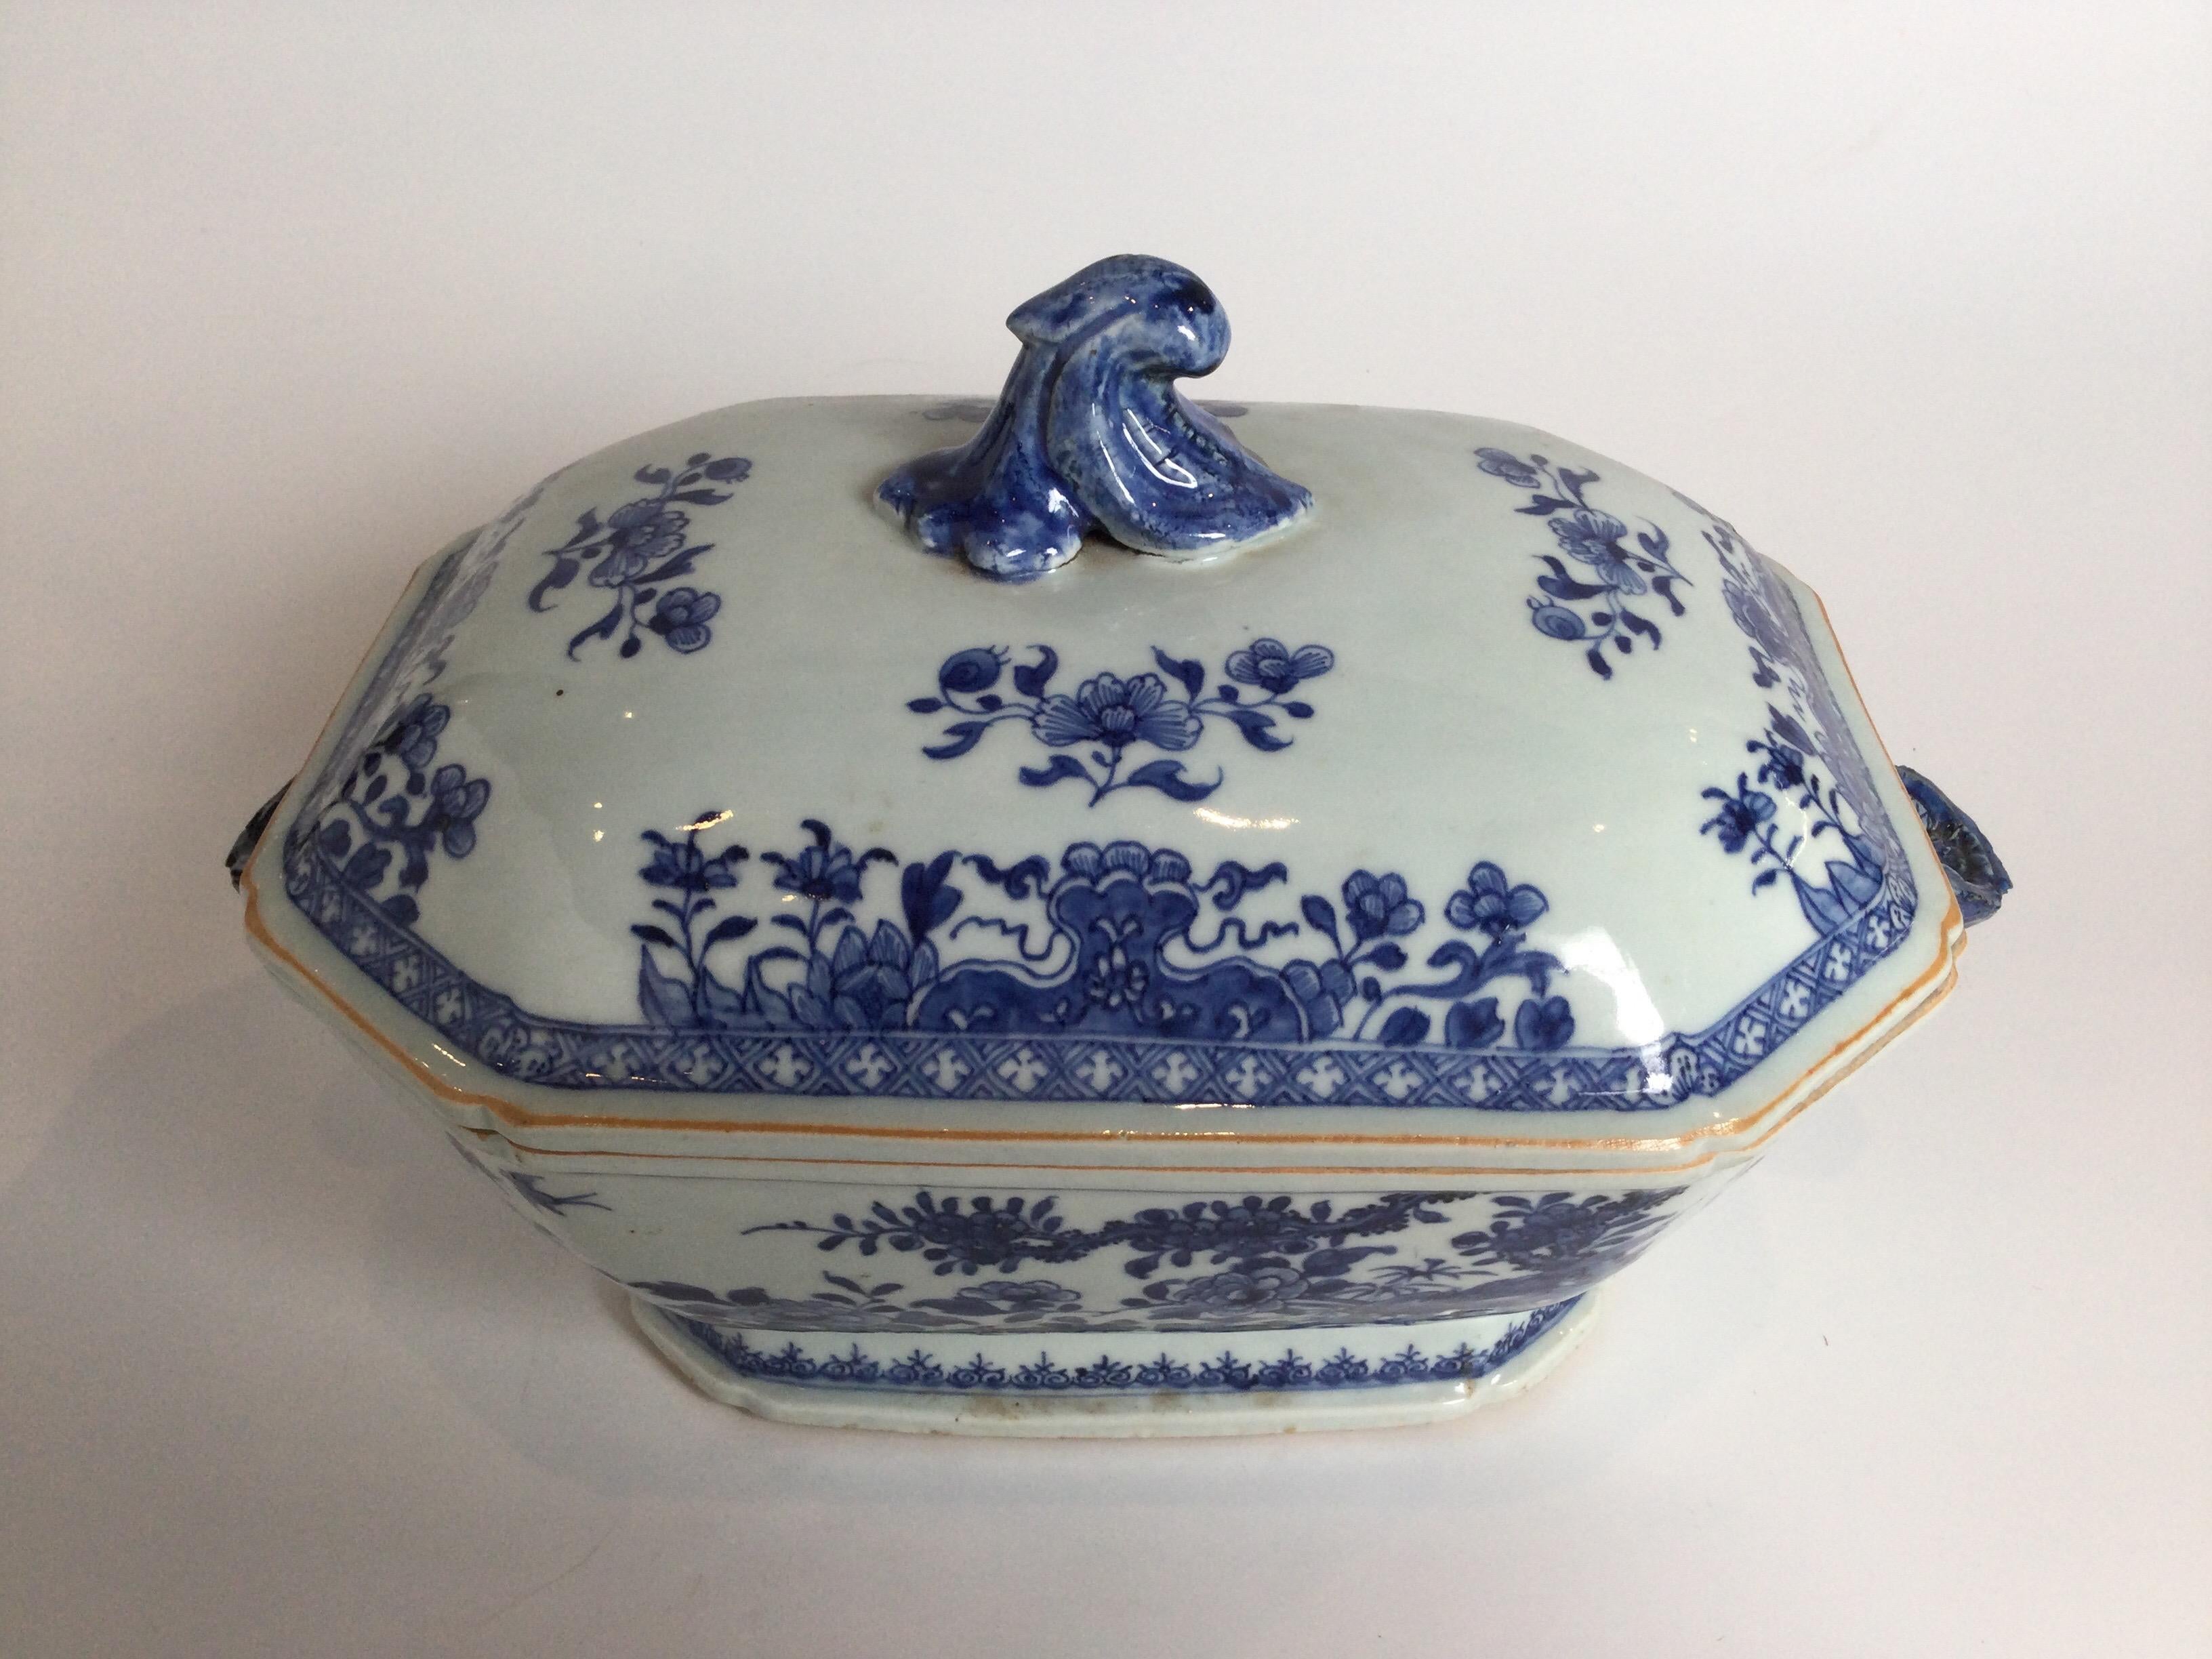 Elégante soupière en porcelaine chinoise de Whiting, datant de 1790, peinte à la main en bleu et blanc, en excellent état, pas de réparations.